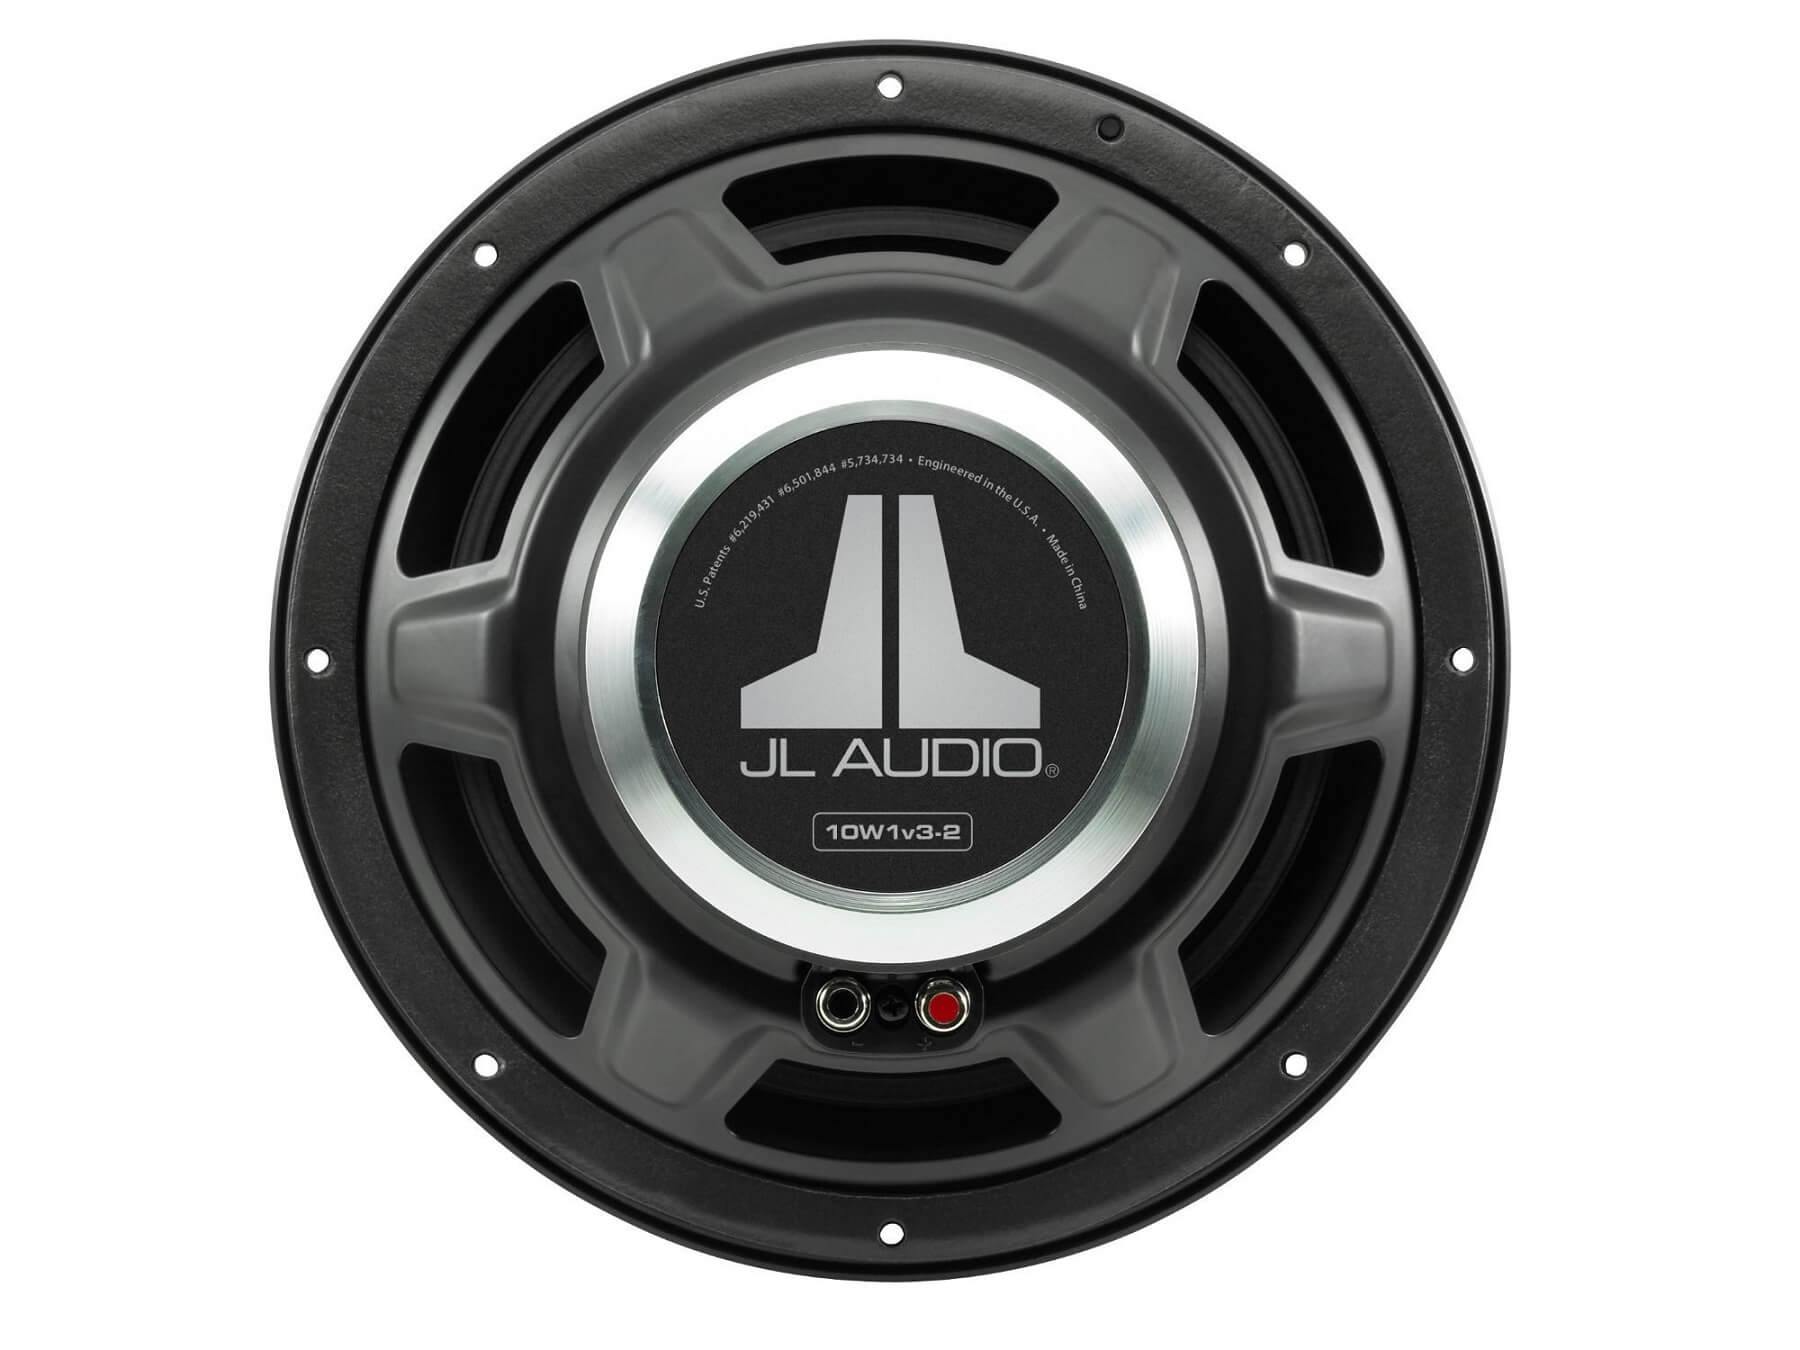 JL Audio 10W1v3 - 10 Inch Subwoofer - 6